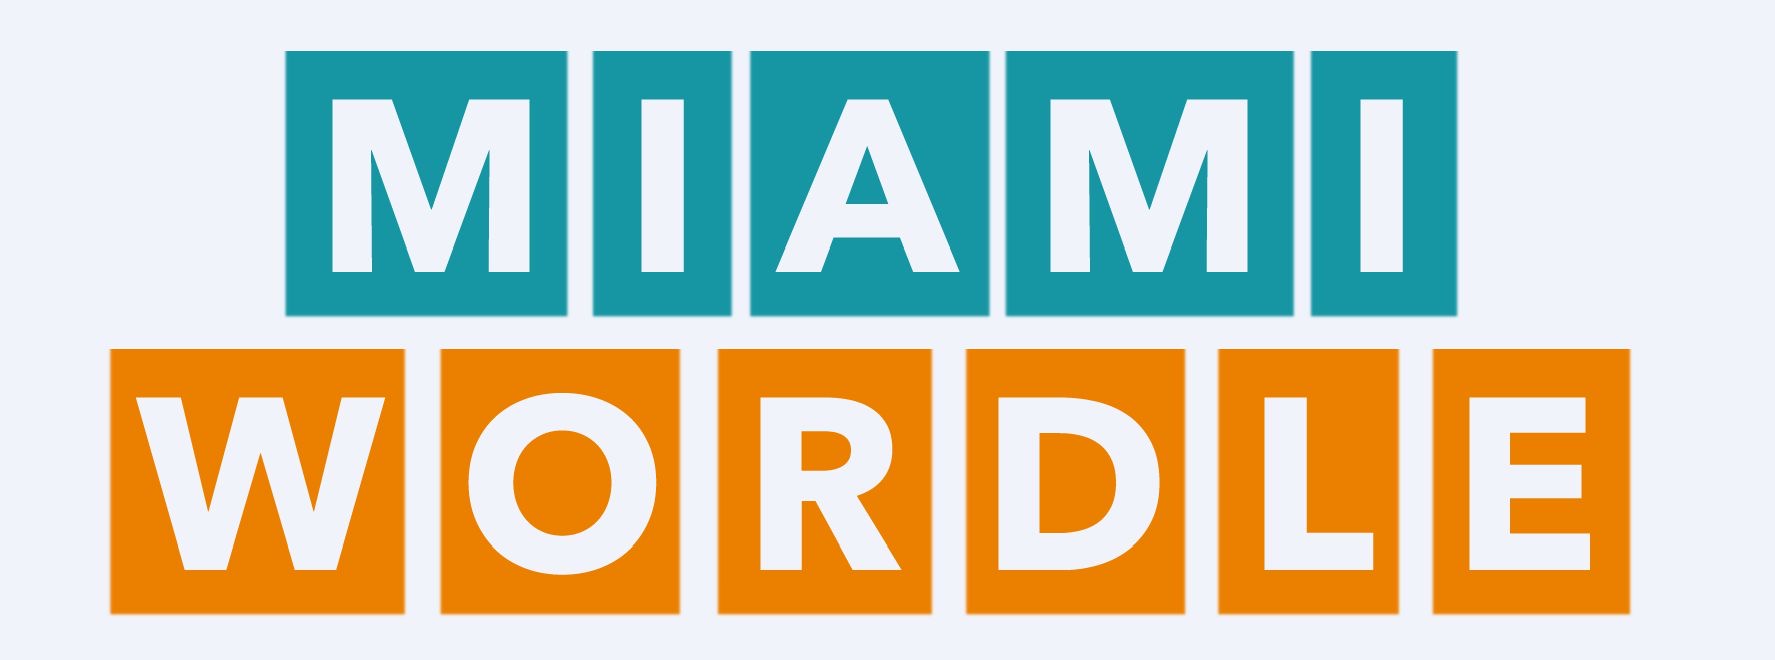 Literally Miami Wordle